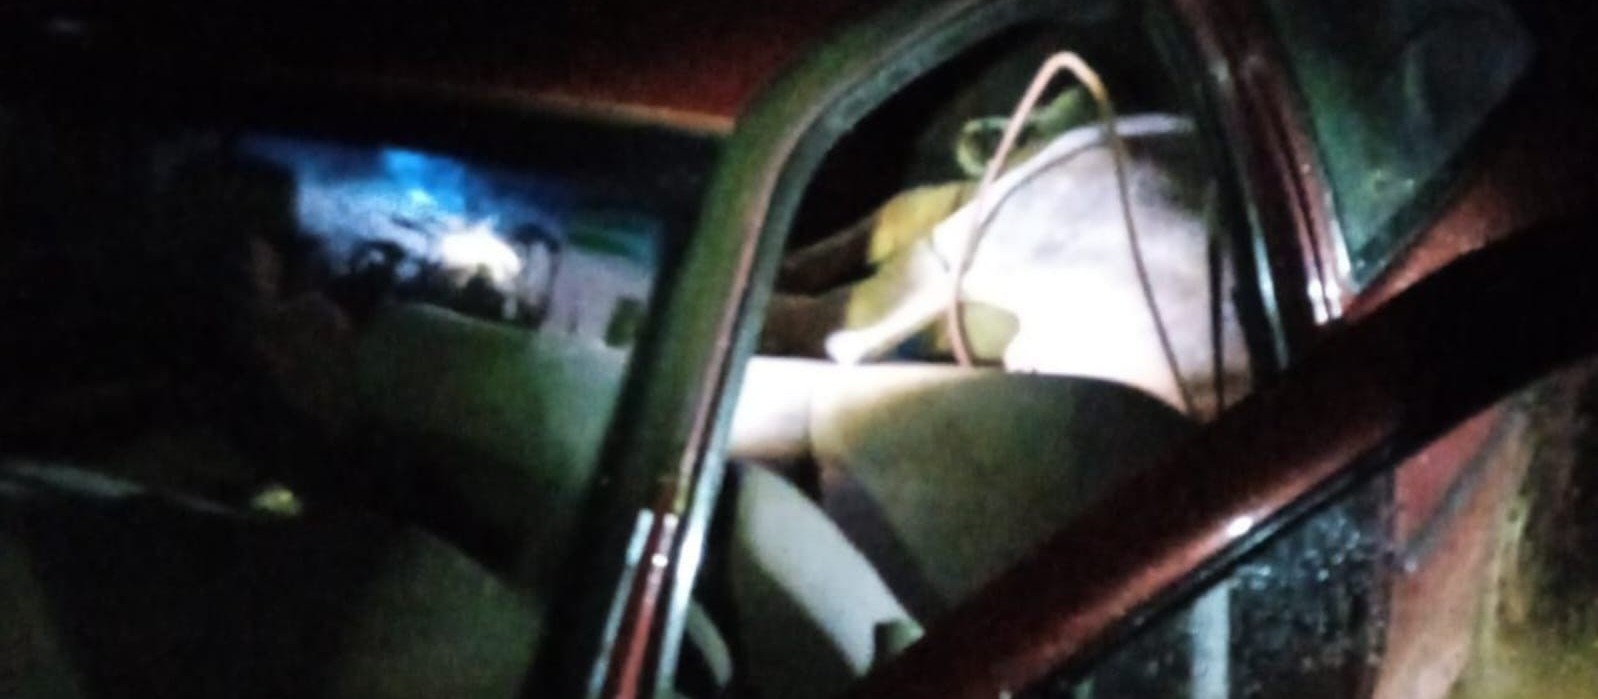 Boi furtado é encontrado amarrado dentro de carro na região de Maringá